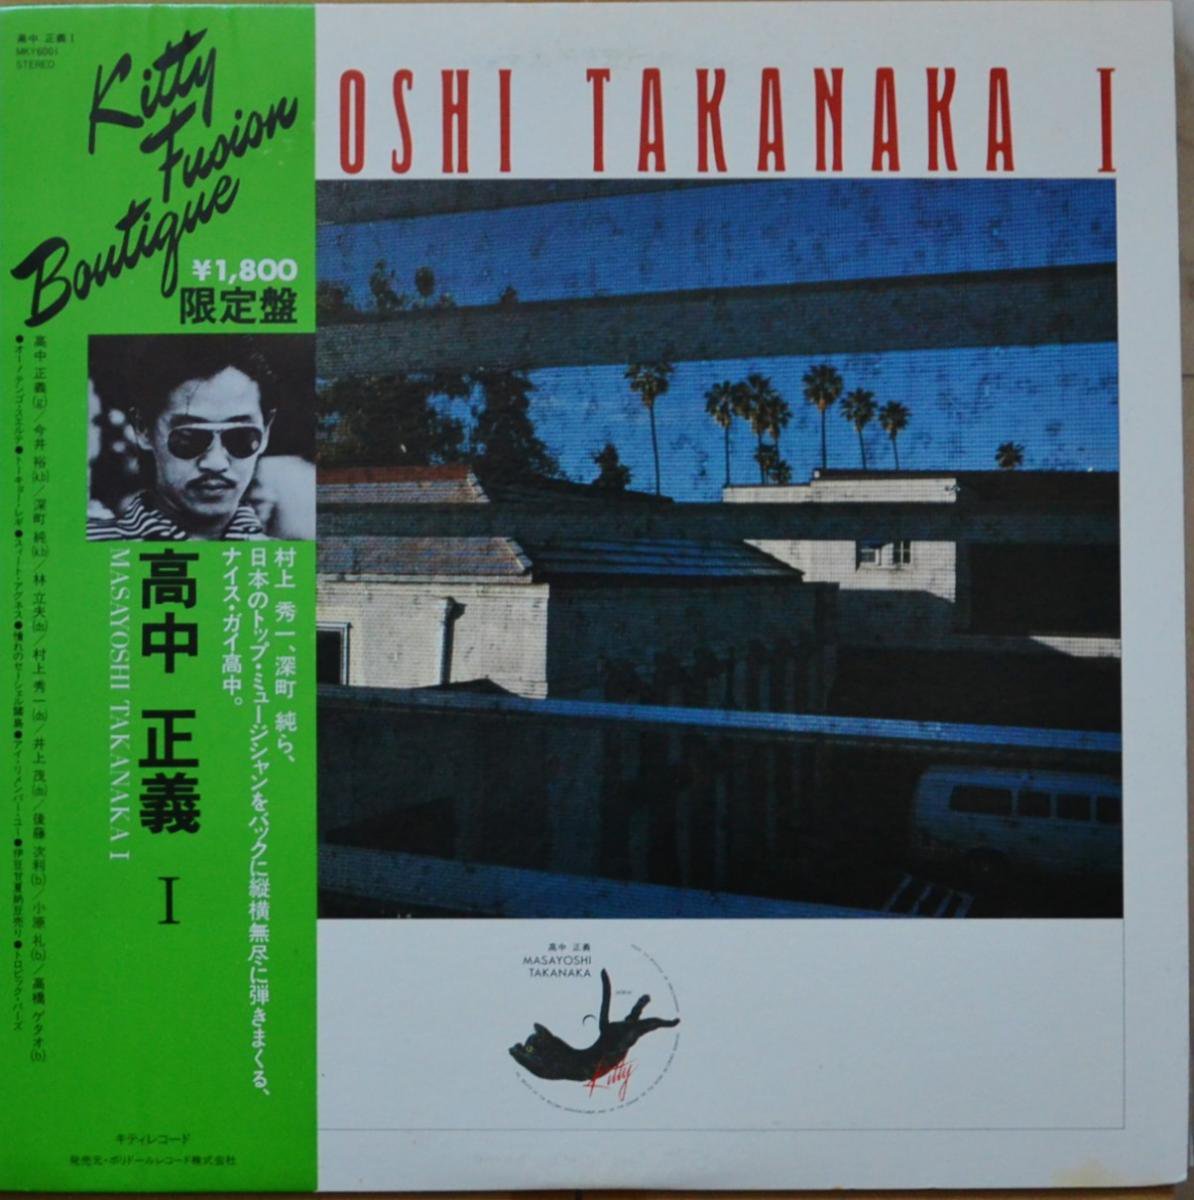 高中正義 MASAYOSHI TAKANAKA / MASAYOSHI TAKANAKA I (LP) - HIP TANK RECORDS